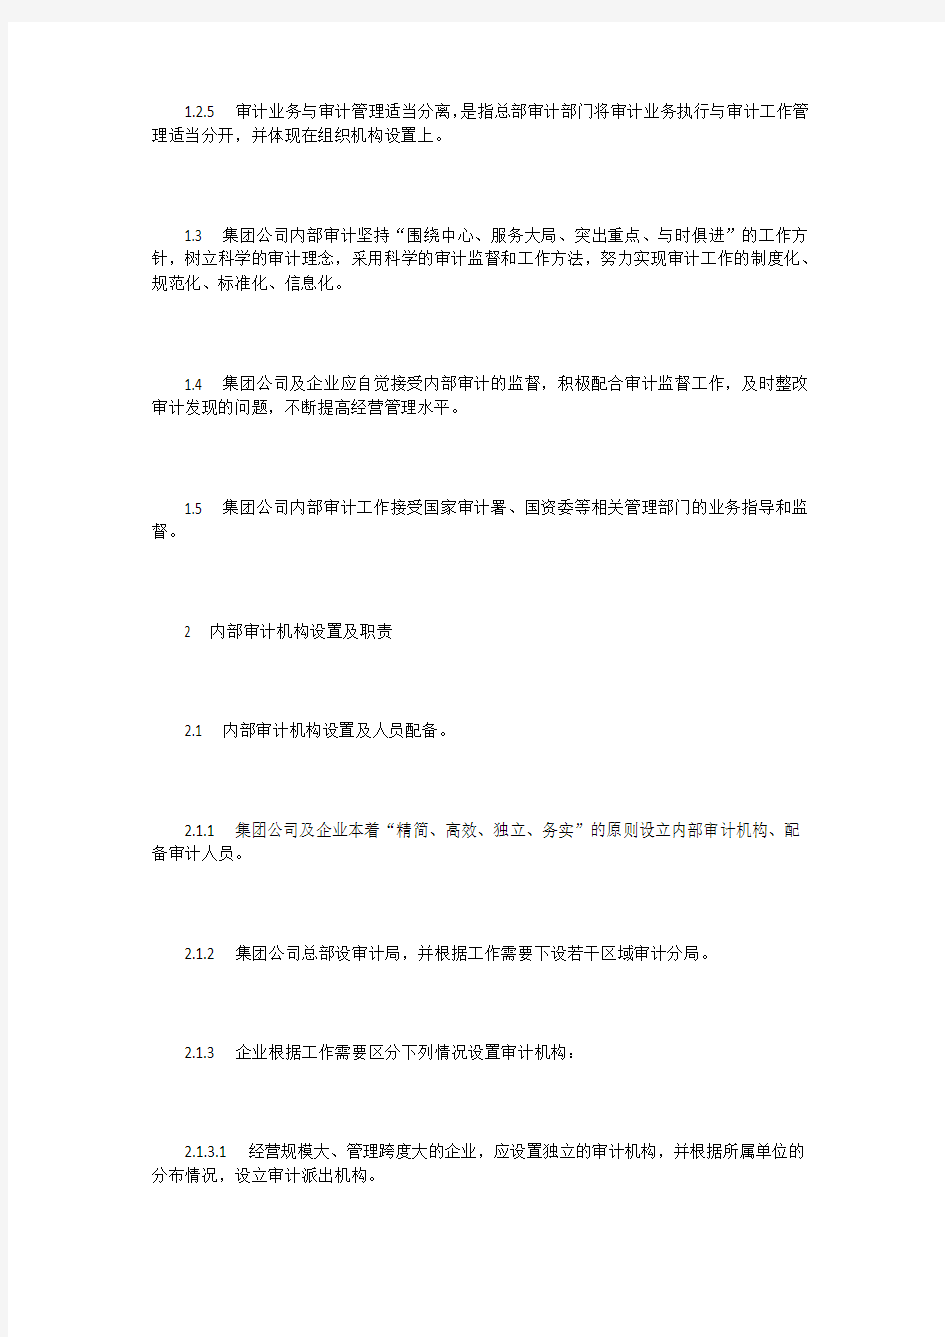 中国石油化工集团公司内部审计工作规定